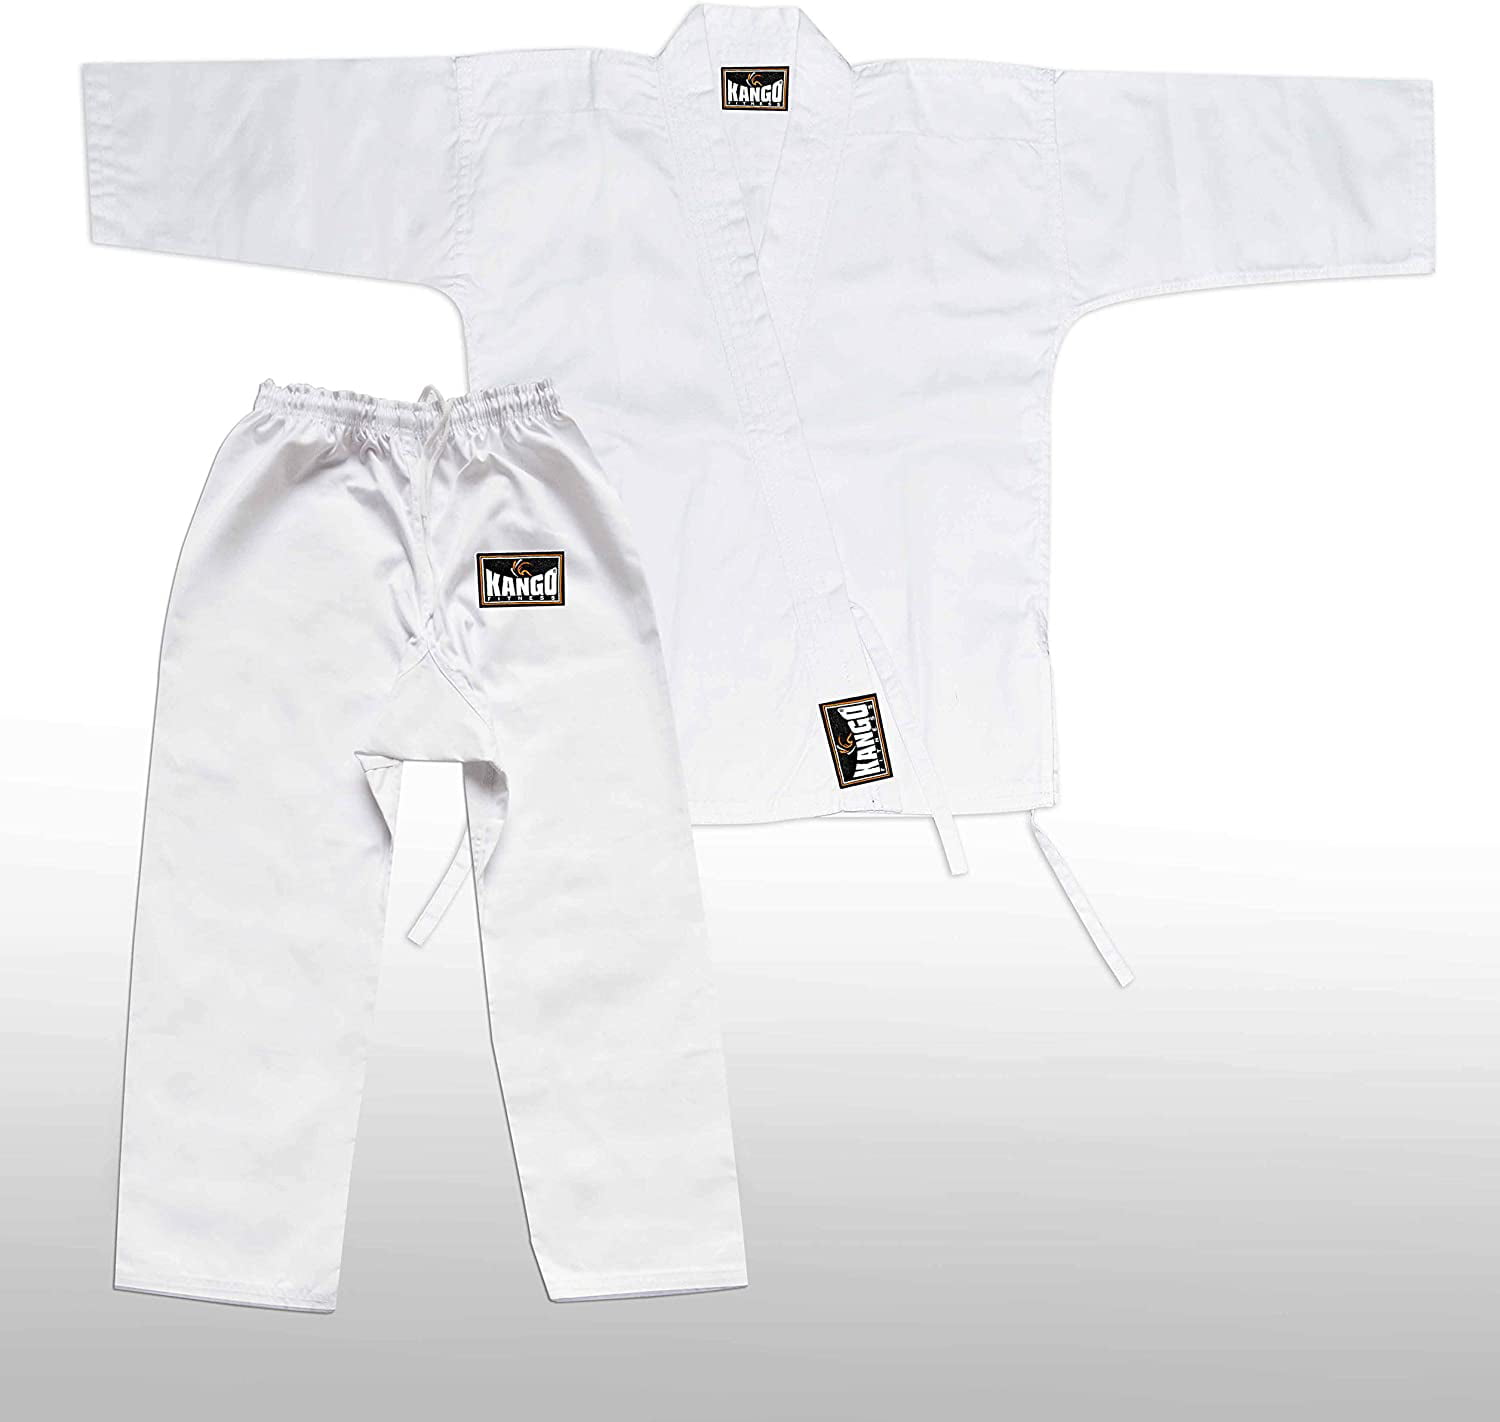 Details about   Sports Junior Kids children Karate Uniform Suit Clothing Poly Cotton White Belt 